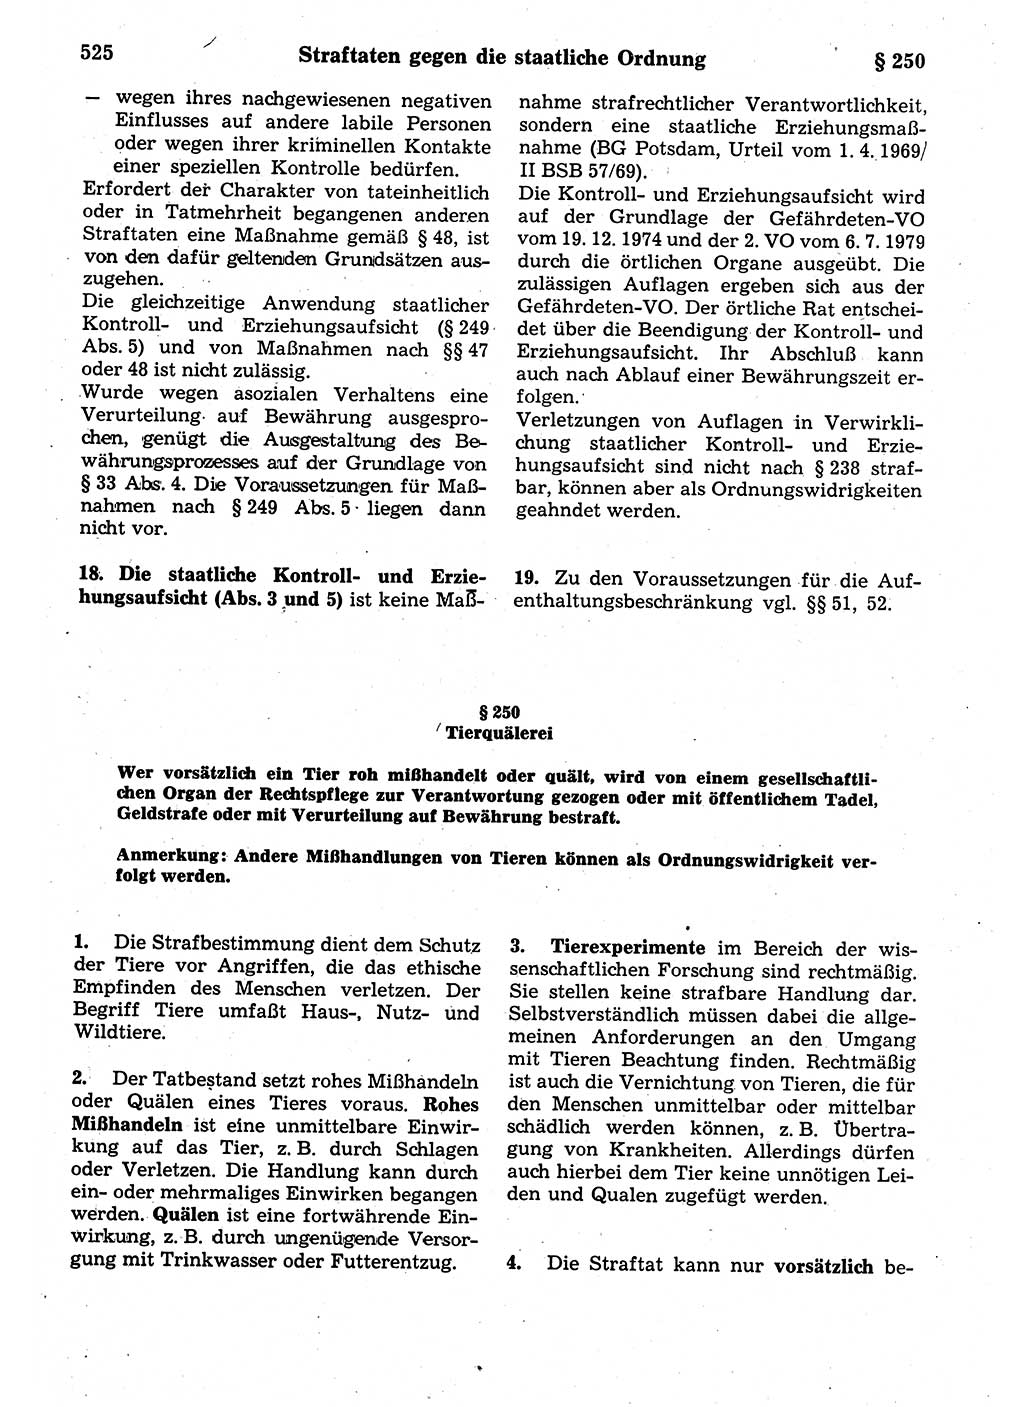 Strafrecht der Deutschen Demokratischen Republik (DDR), Kommentar zum Strafgesetzbuch (StGB) 1987, Seite 525 (Strafr. DDR Komm. StGB 1987, S. 525)